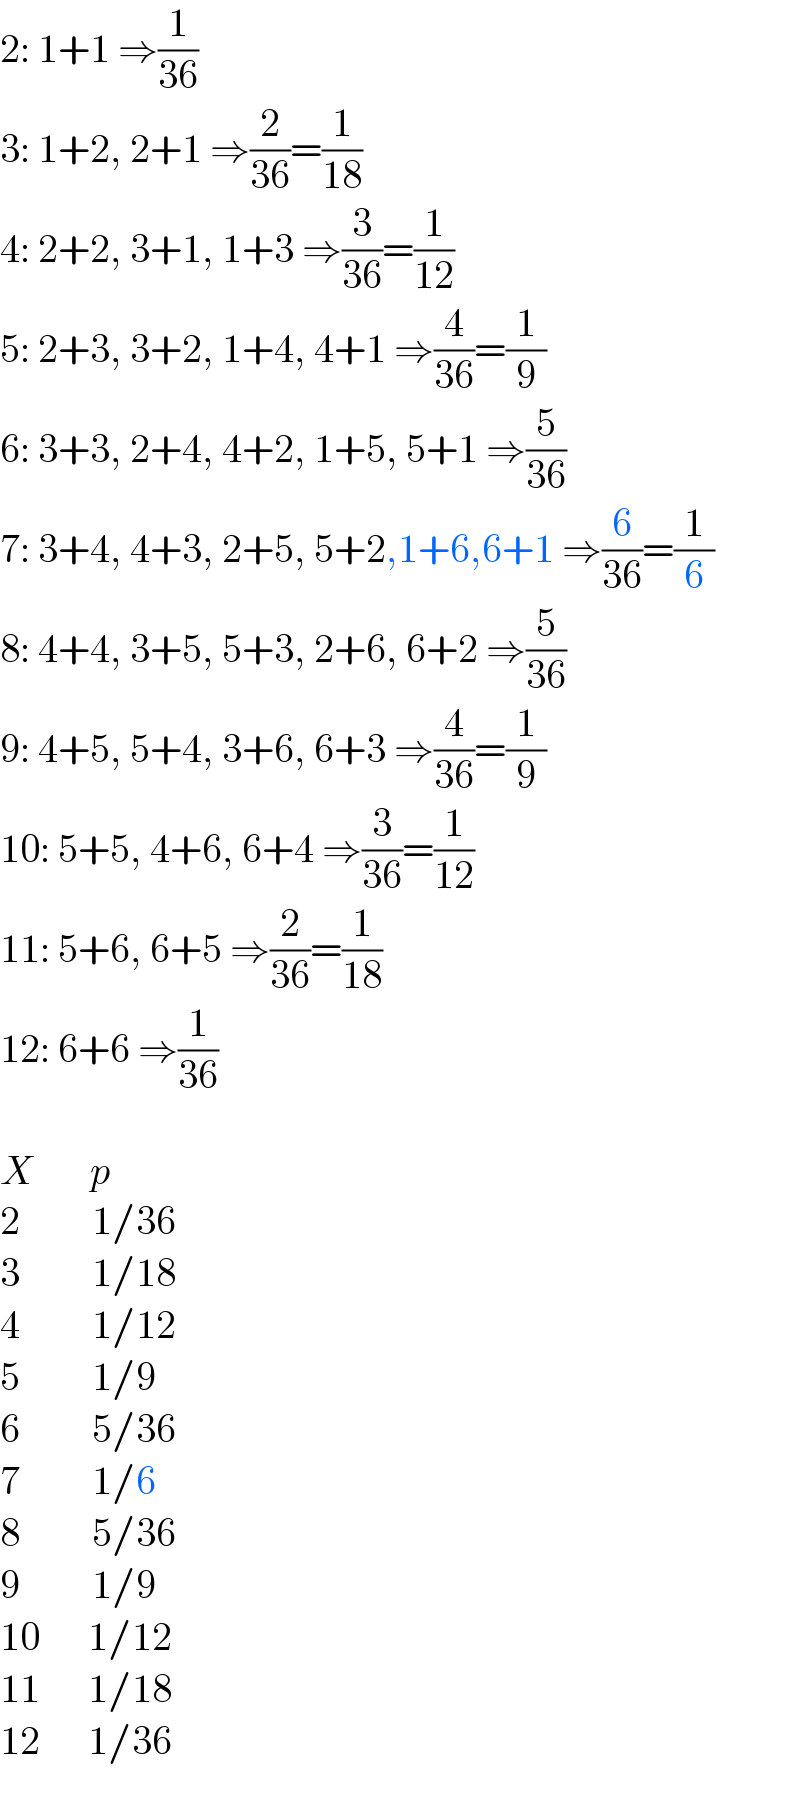 2: 1+1 ⇒(1/(36))  3: 1+2, 2+1 ⇒(2/(36))=(1/(18))  4: 2+2, 3+1, 1+3 ⇒(3/(36))=(1/(12))  5: 2+3, 3+2, 1+4, 4+1 ⇒(4/(36))=(1/9)  6: 3+3, 2+4, 4+2, 1+5, 5+1 ⇒(5/(36))  7: 3+4, 4+3, 2+5, 5+2,1+6,6+1 ⇒(6/(36))=(1/6)  8: 4+4, 3+5, 5+3, 2+6, 6+2 ⇒(5/(36))  9: 4+5, 5+4, 3+6, 6+3 ⇒(4/(36))=(1/9)  10: 5+5, 4+6, 6+4 ⇒(3/(36))=(1/(12))  11: 5+6, 6+5 ⇒(2/(36))=(1/(18))  12: 6+6 ⇒(1/(36))    X       p  2         1/36  3         1/18  4         1/12  5         1/9  6         5/36  7         1/6  8         5/36  9         1/9  10      1/12  11      1/18  12      1/36  